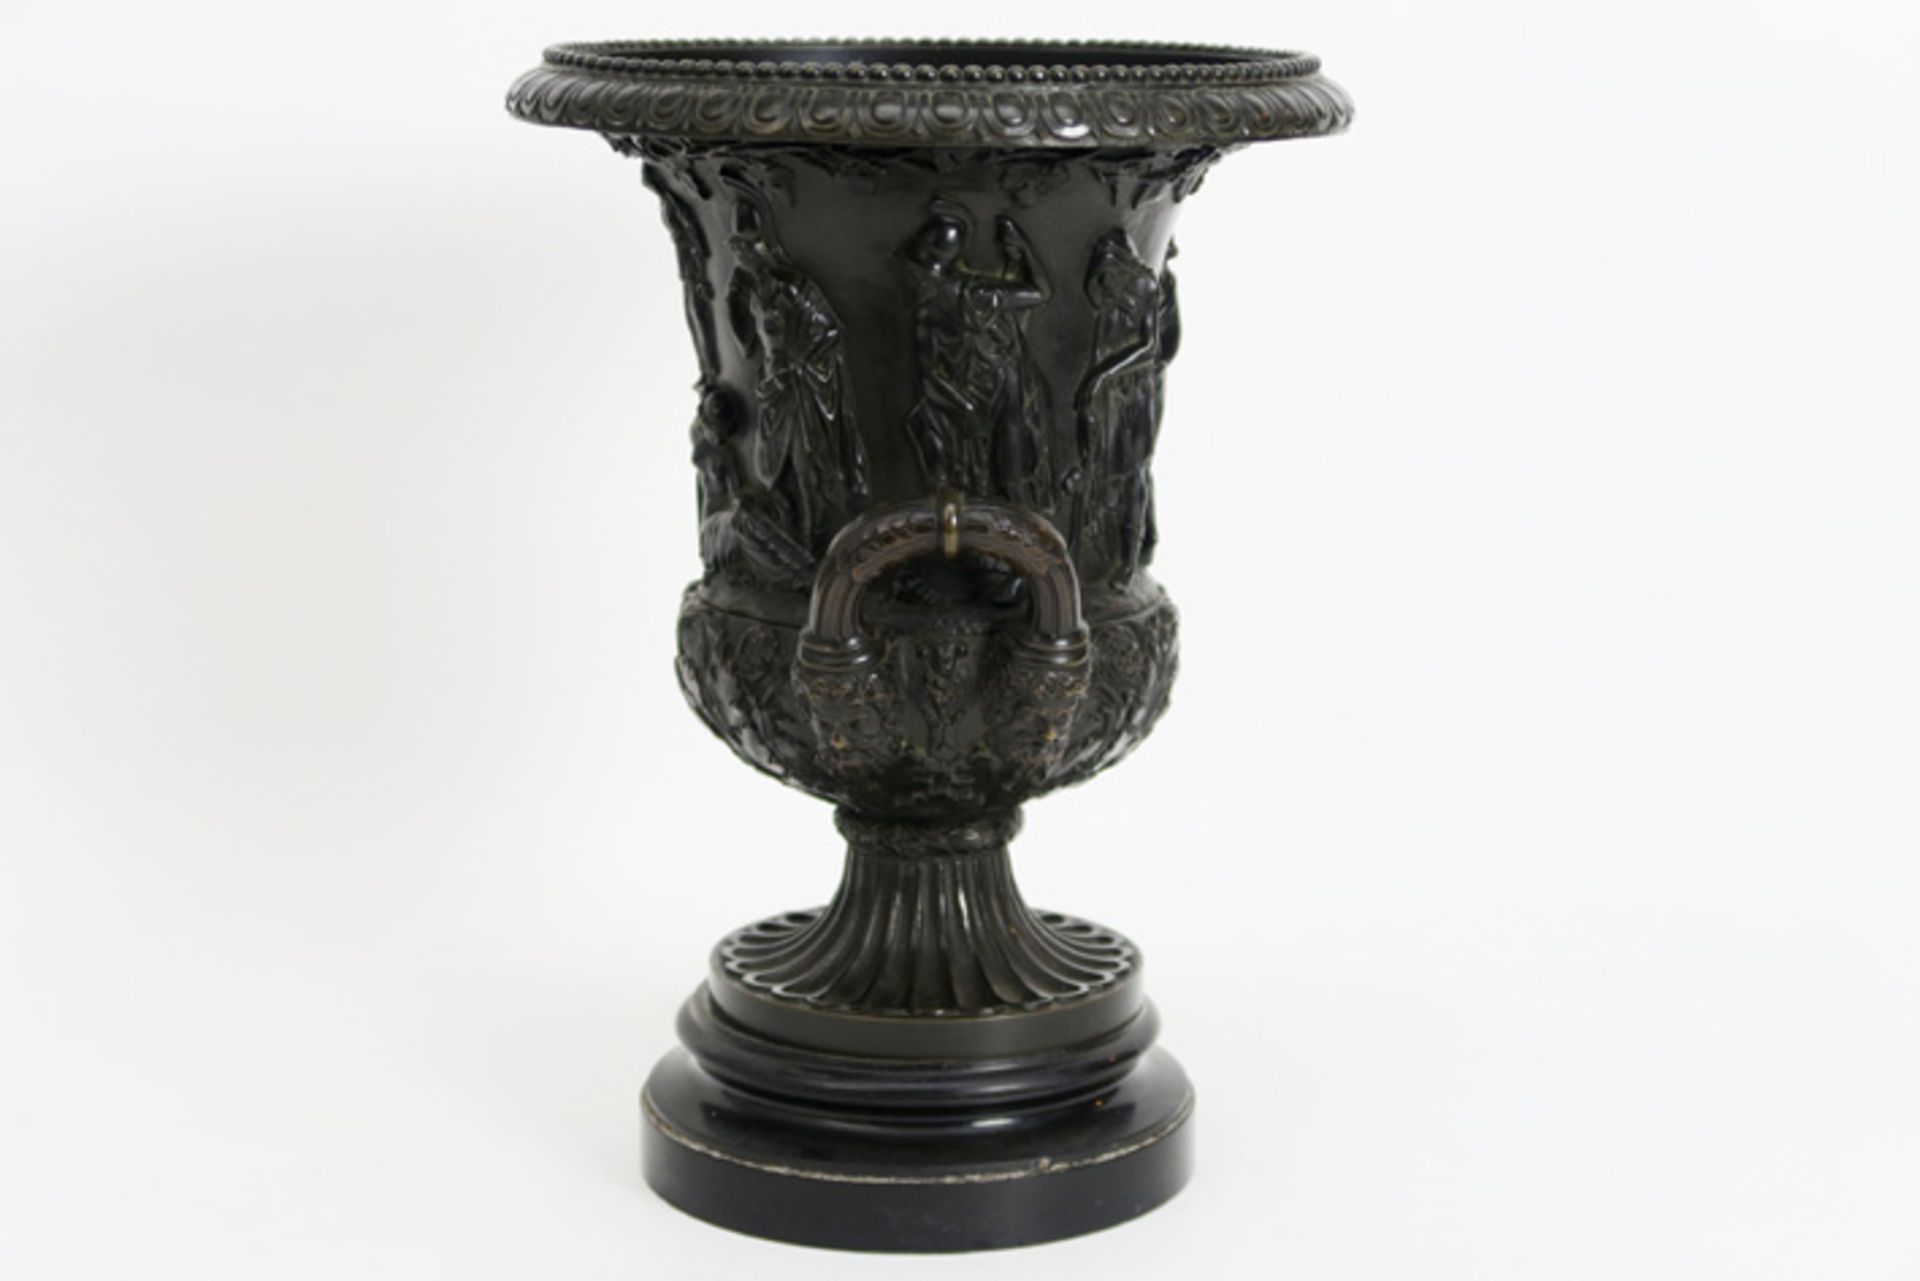 Urnvormige bronzen vaas in Empire-stijl met een bas-reliëf van figuren en op marmeren basis - hoogte - Image 3 of 3